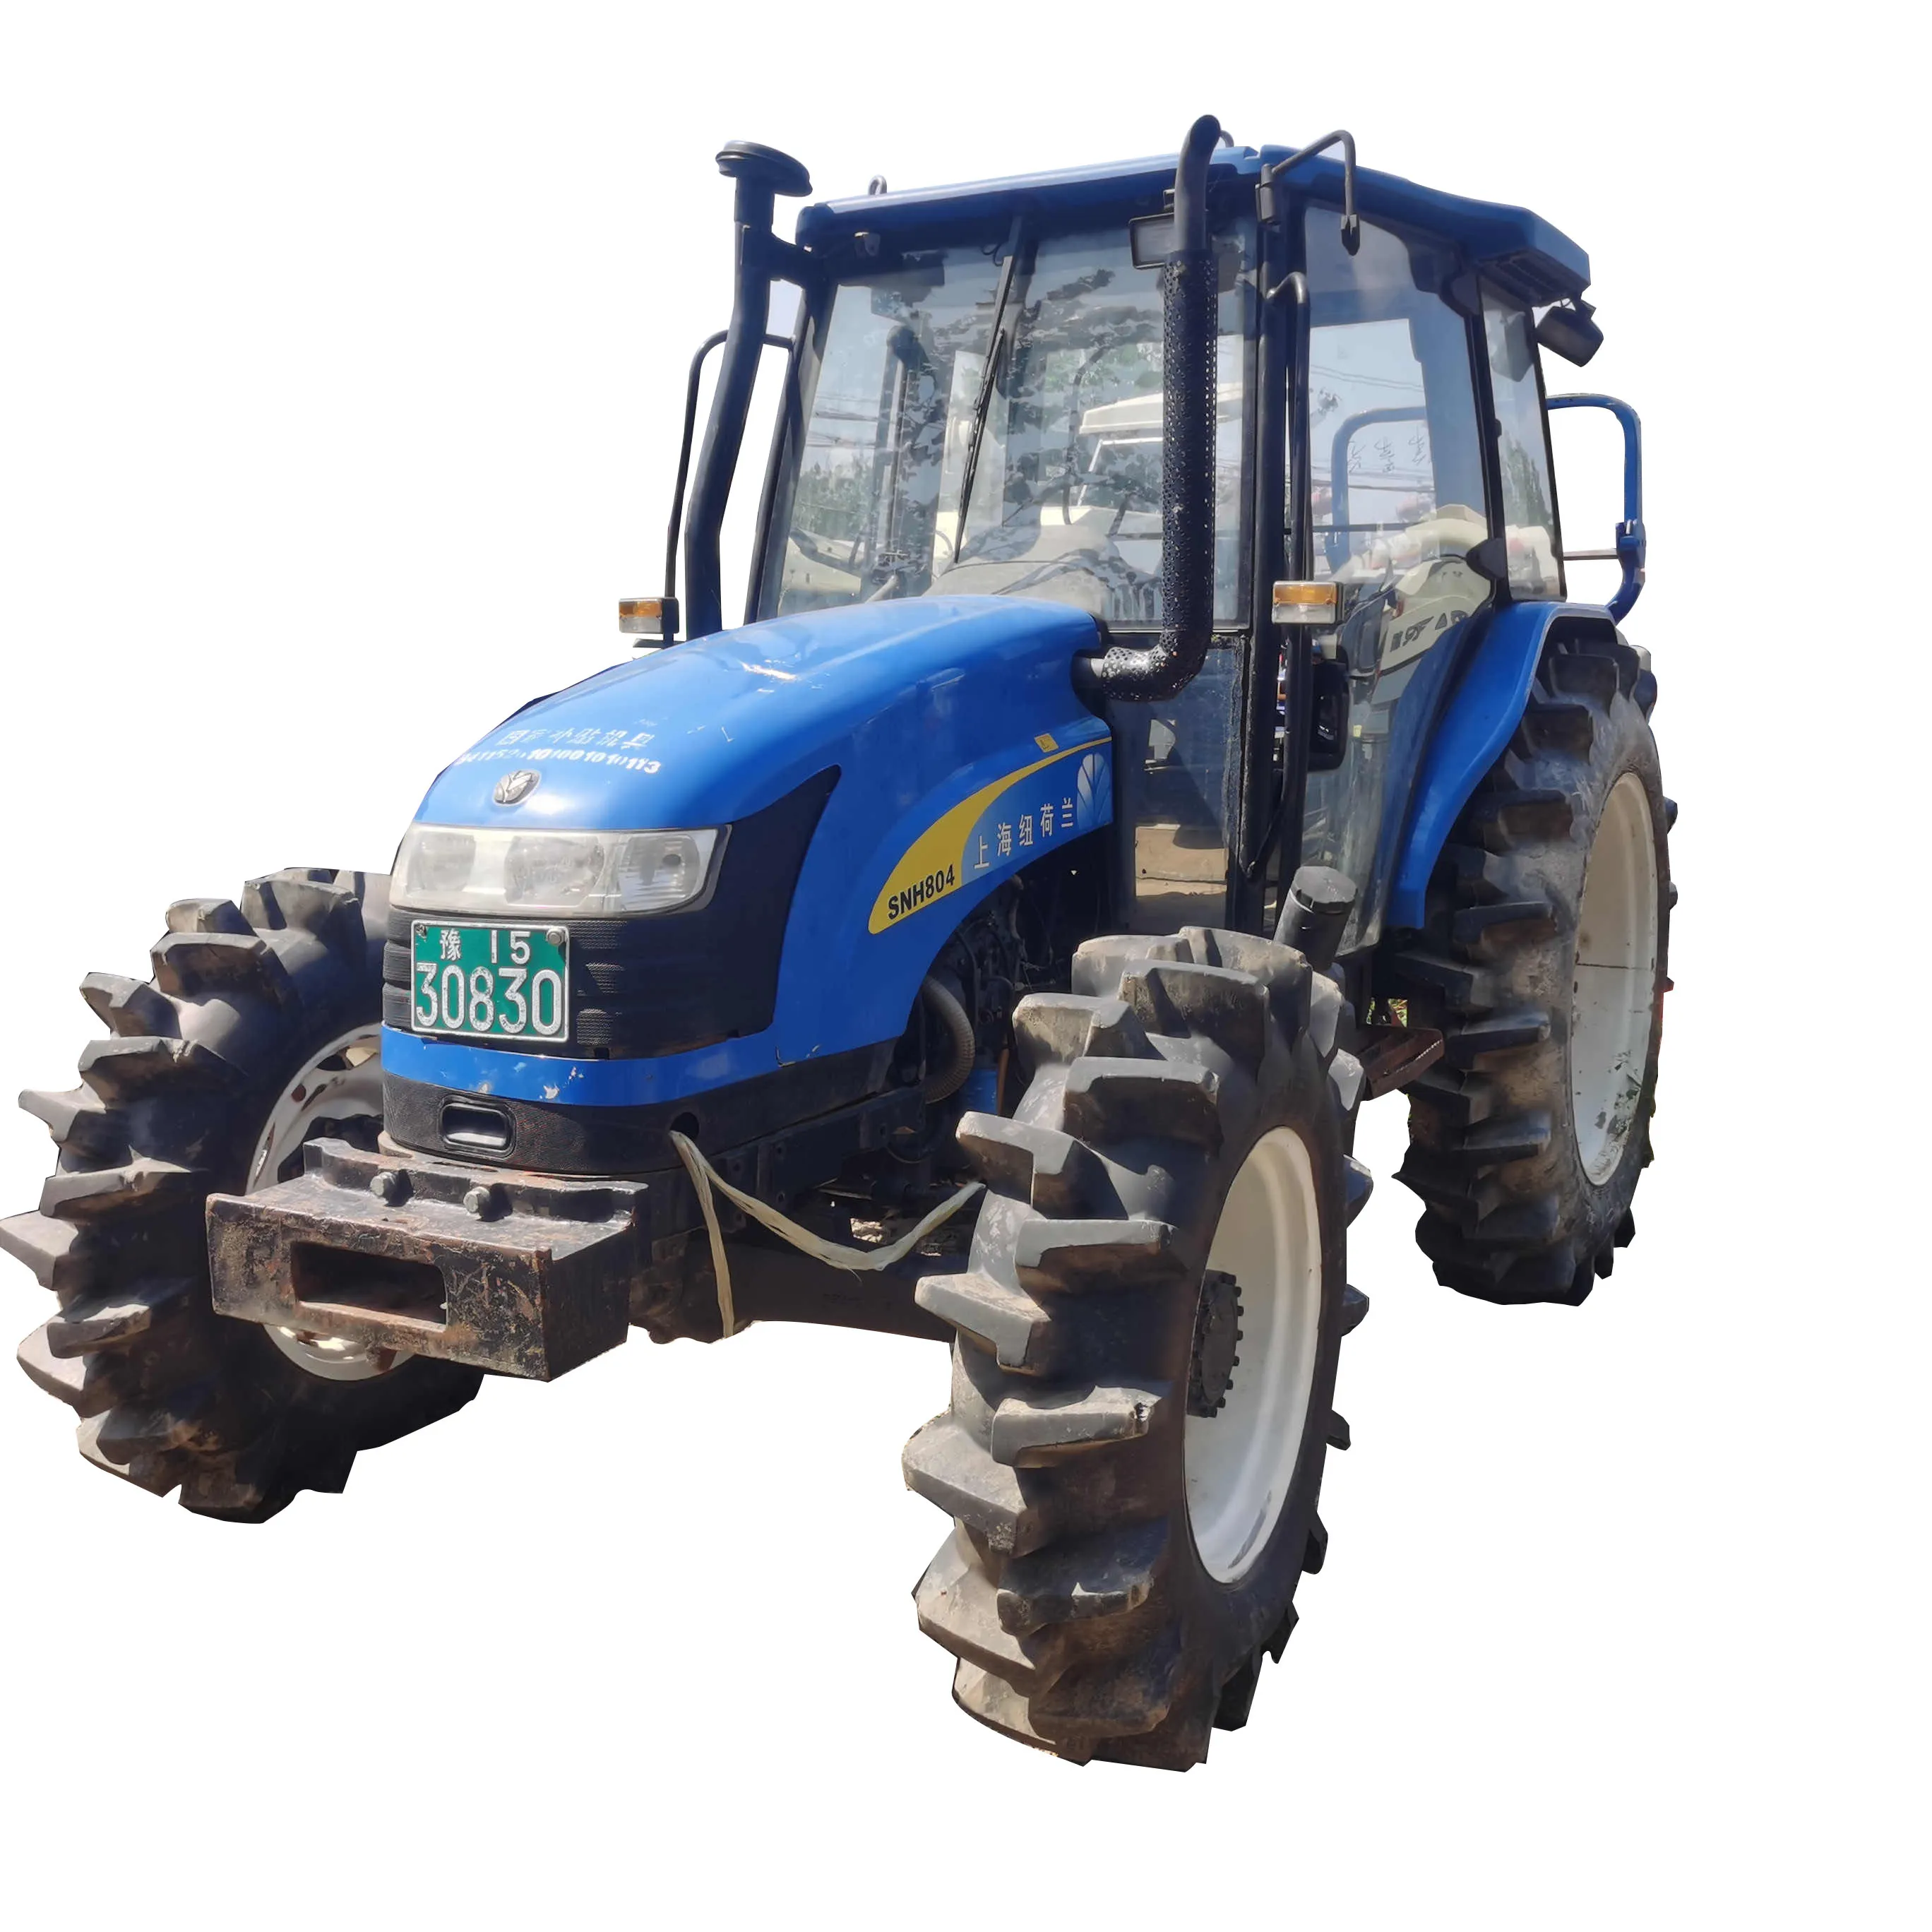 Usato New Holland 4X4 80HP macchine agricole usate trattori agricoli prezzo in vendita